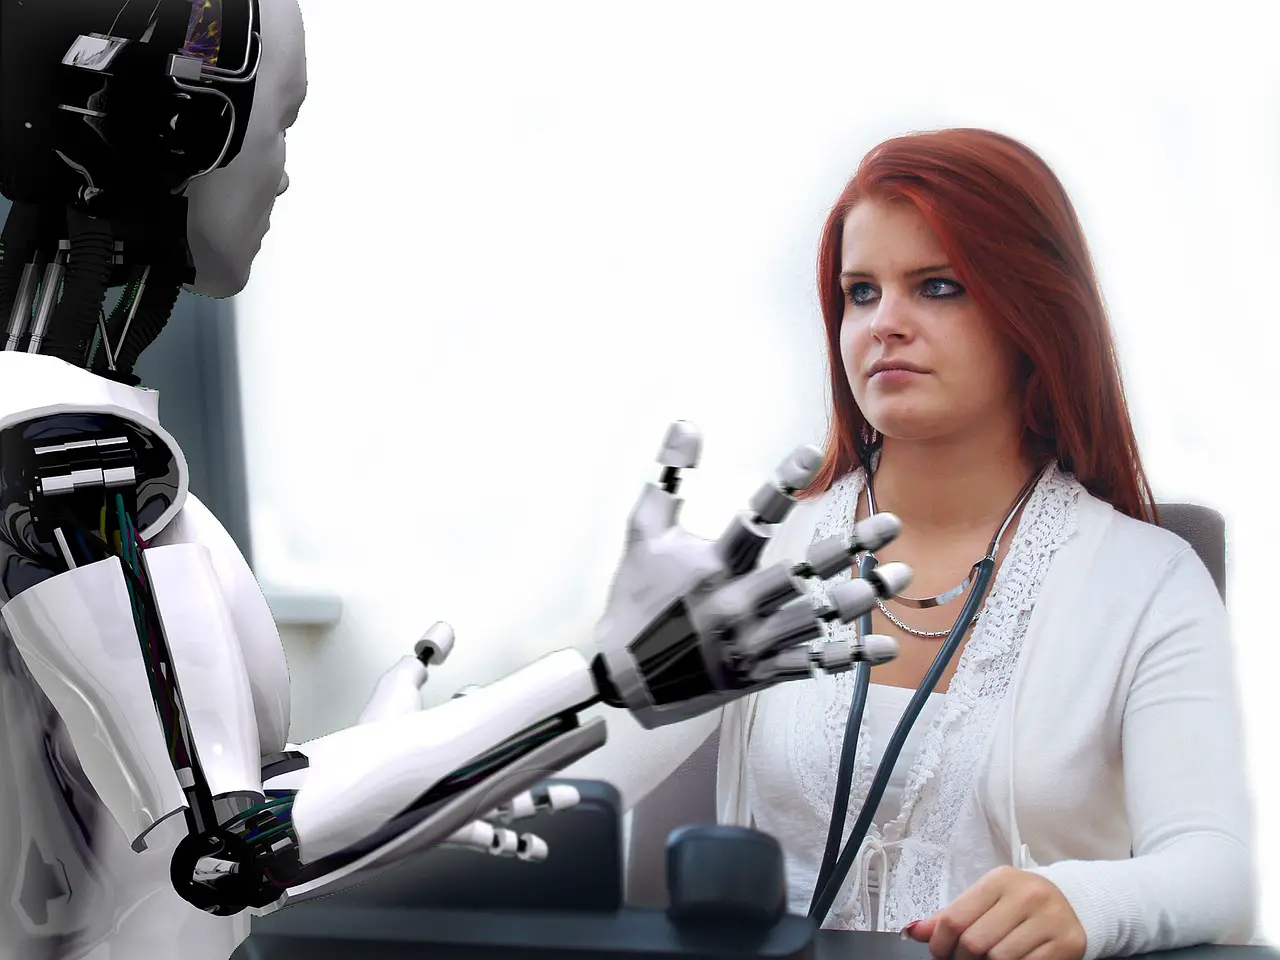 Robot With Human